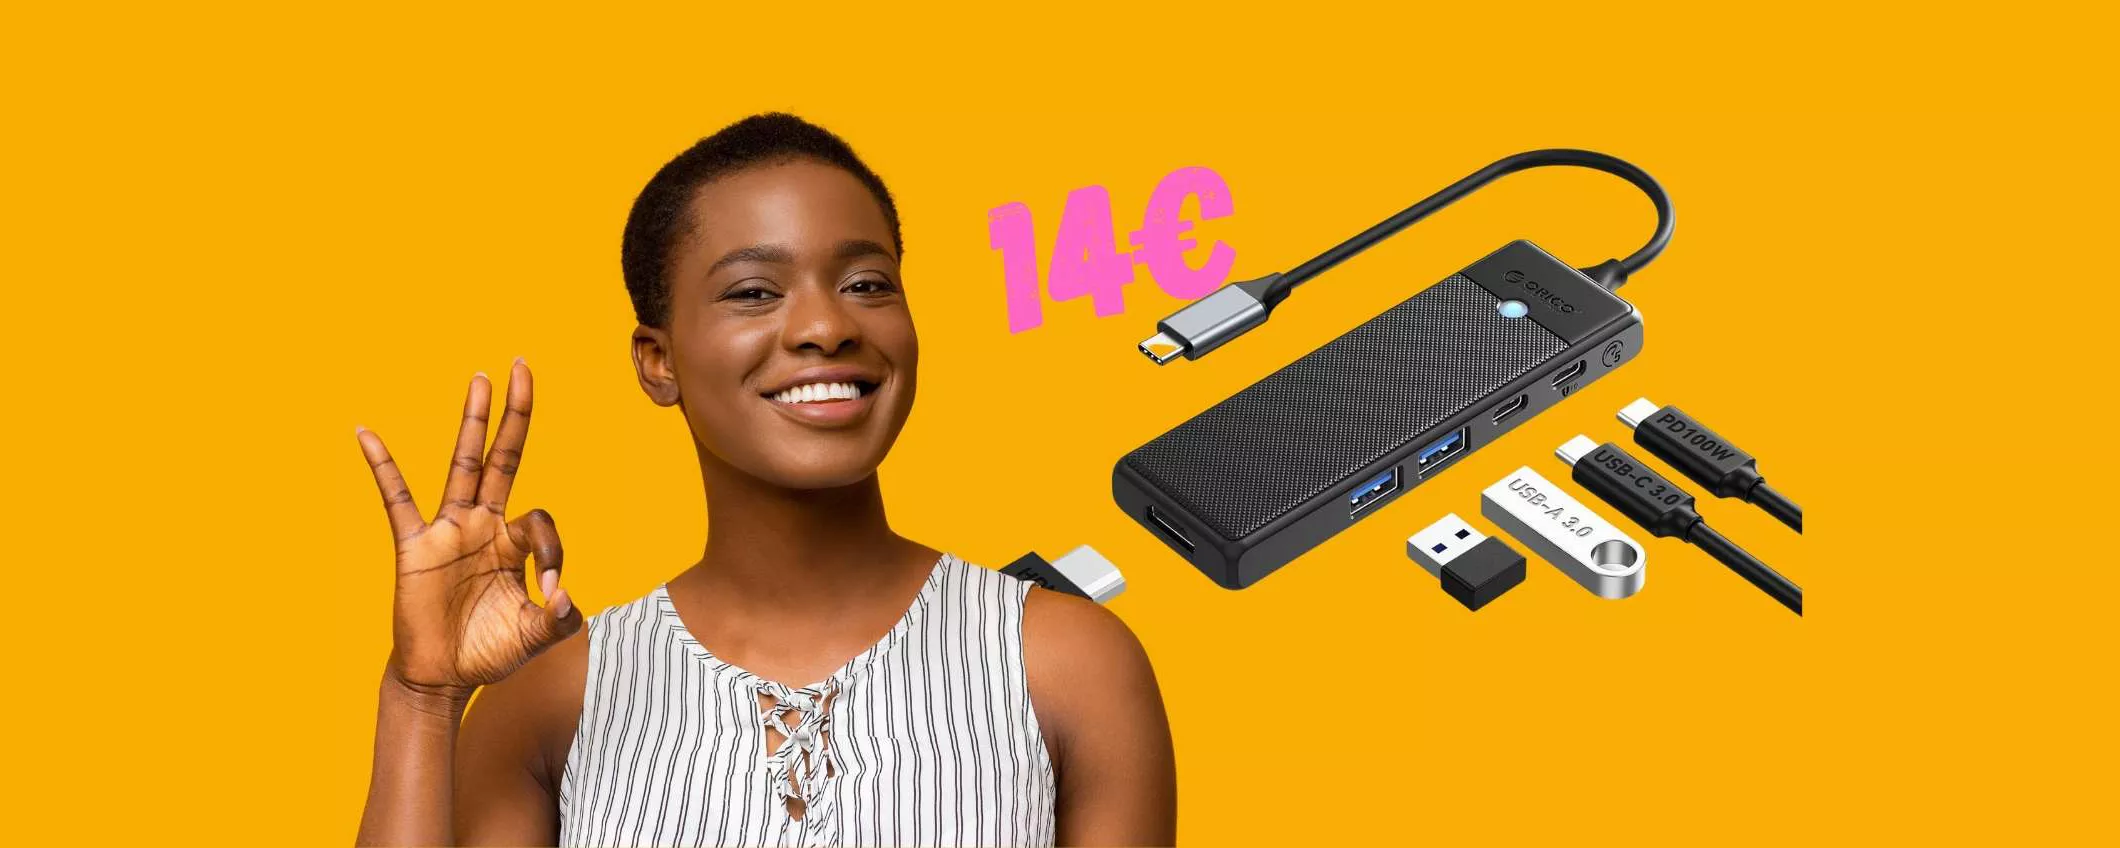 Adattatore USB 5 in 1 FORMIDABILE a prezzo TAGLIATO (14€)